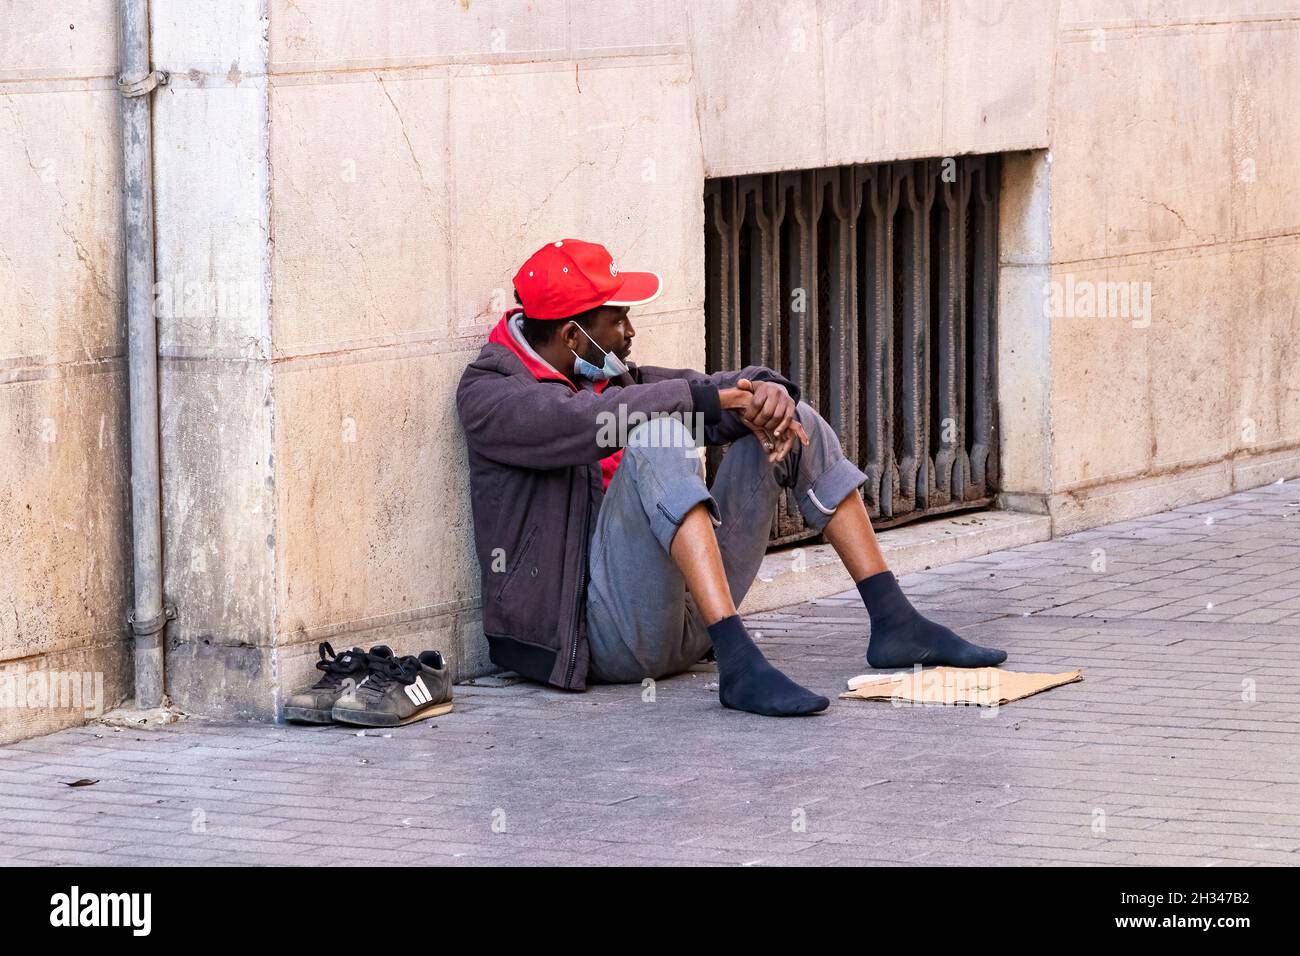 Huelva, Spain - October 24, 2021: Black homeless person begging for money on the street Stock Photo